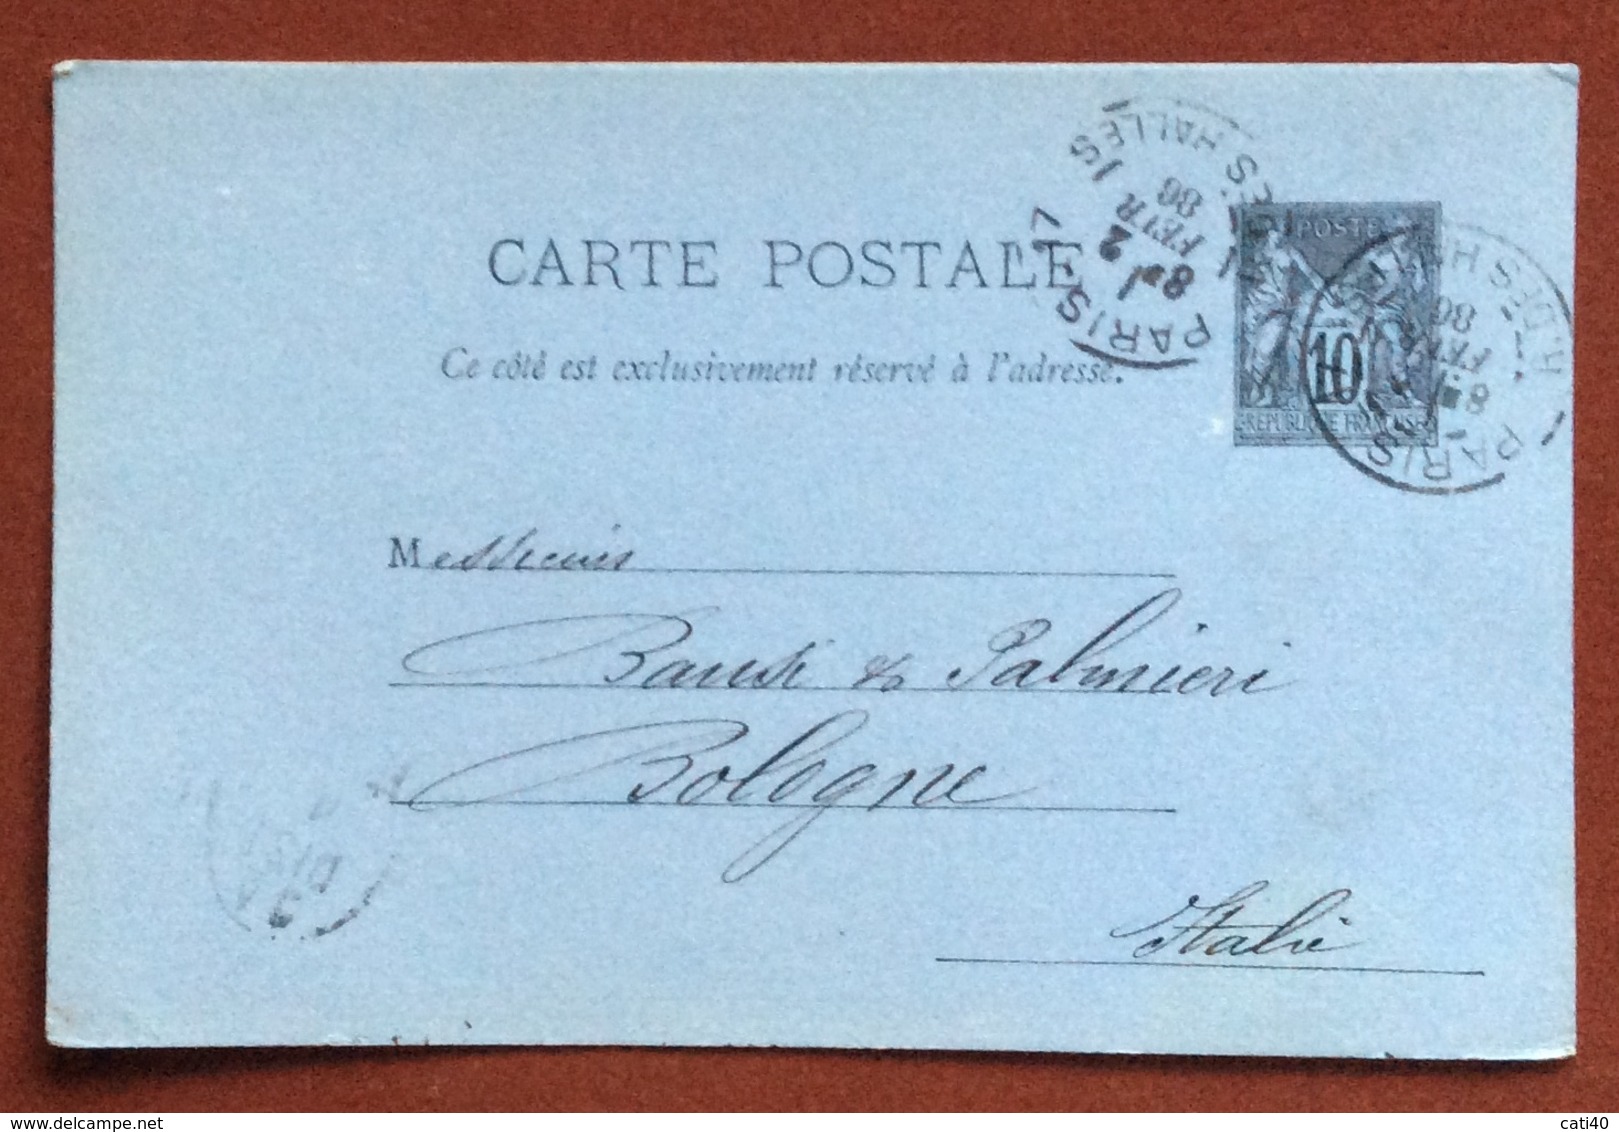 FRANCIA   CARTE POSTALE  10 C.  PARIS R. DES HALLES   TO  BOLOGNA  2/2/86 + LAPOSTOLET FRERES & CERTEUX - 1876-1898 Sage (Type II)